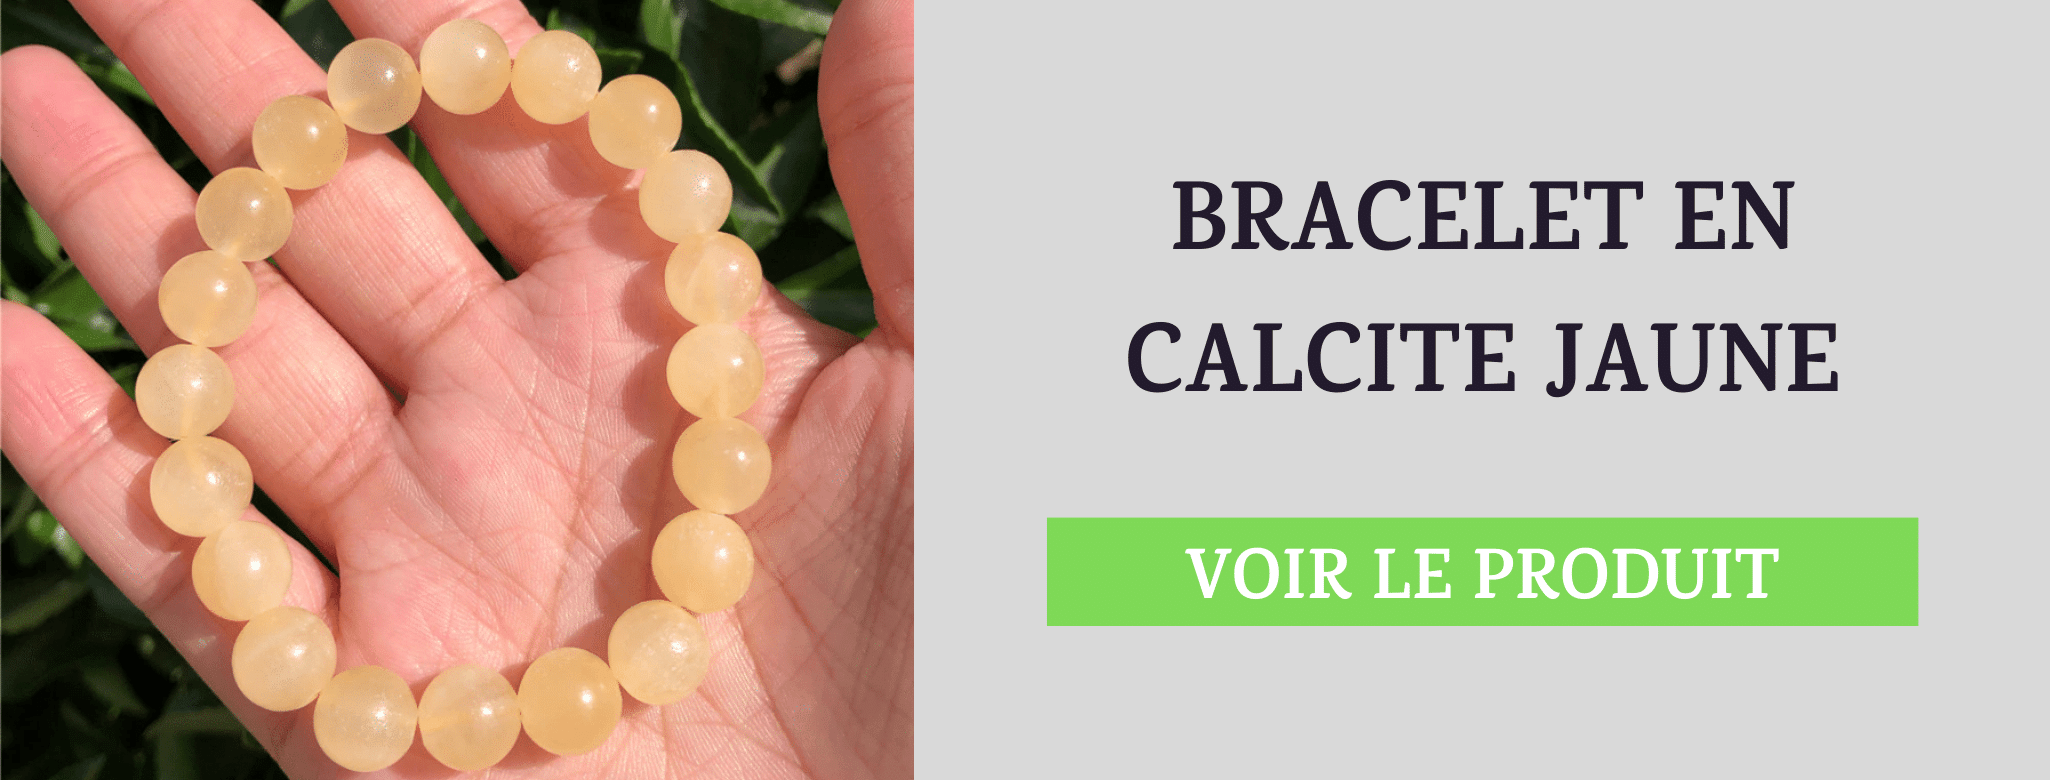 Bracelet Pierre Calcite Jaune